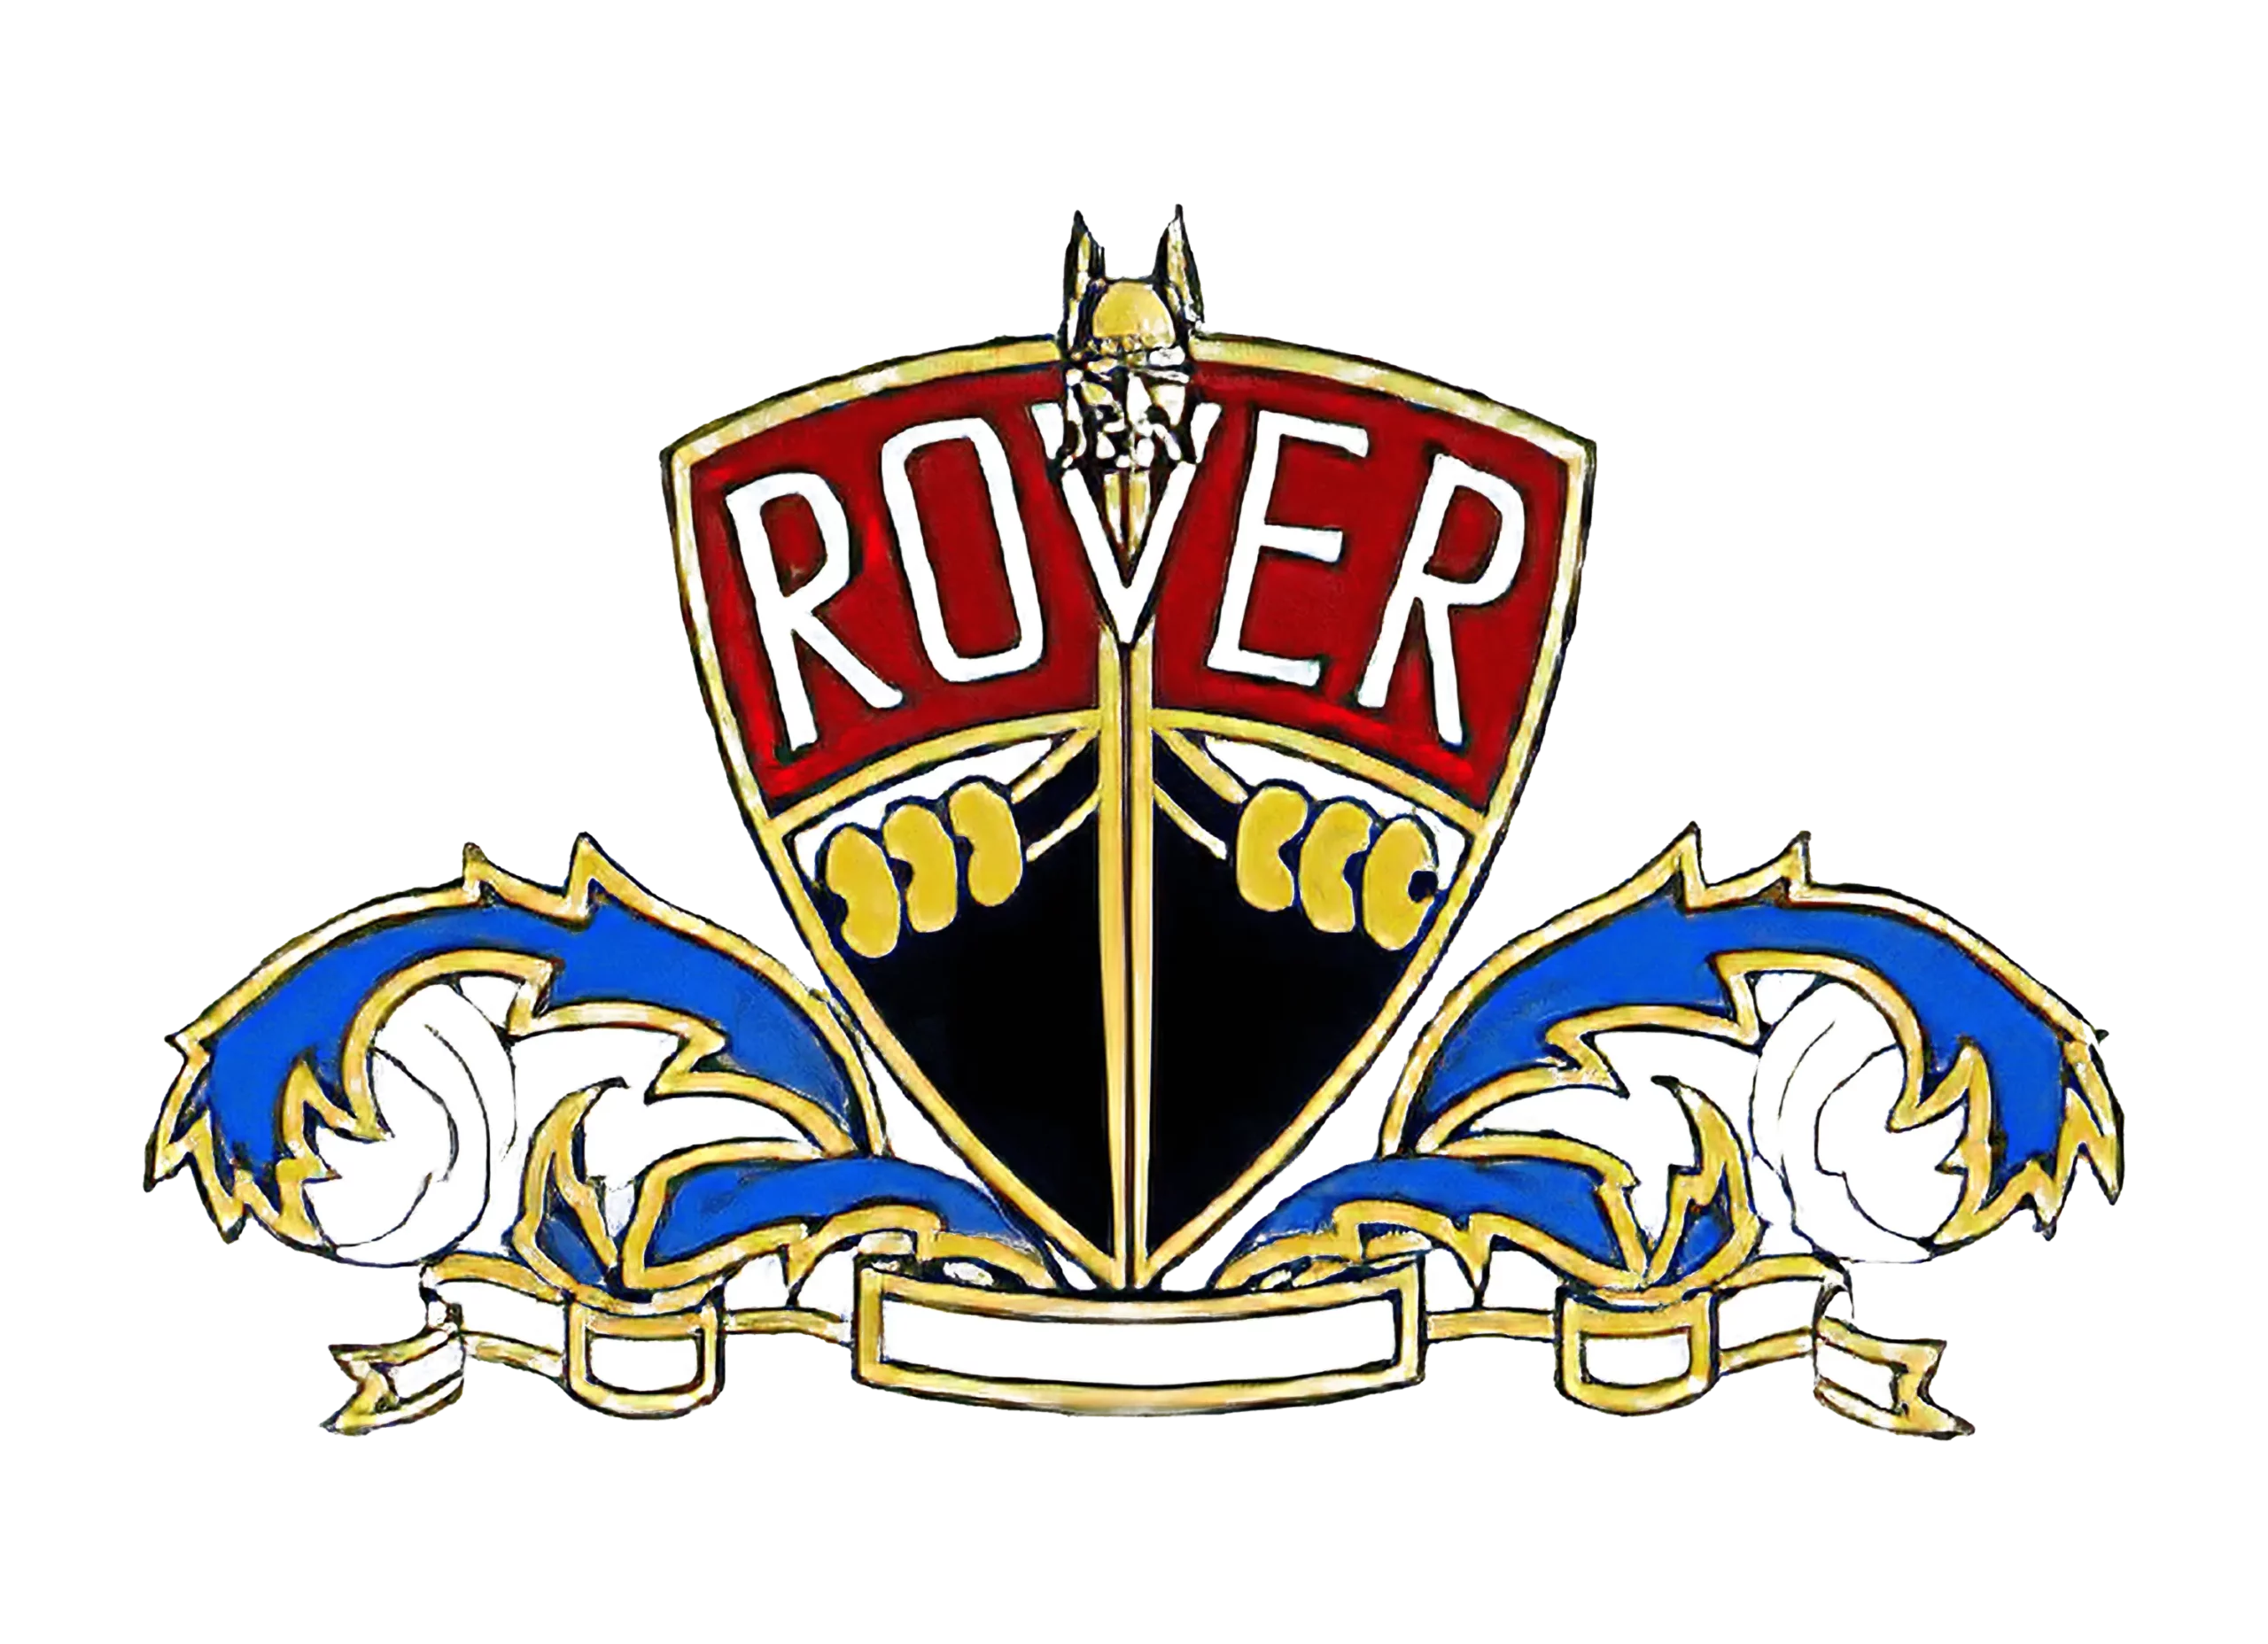 Rover logo 1947-1949